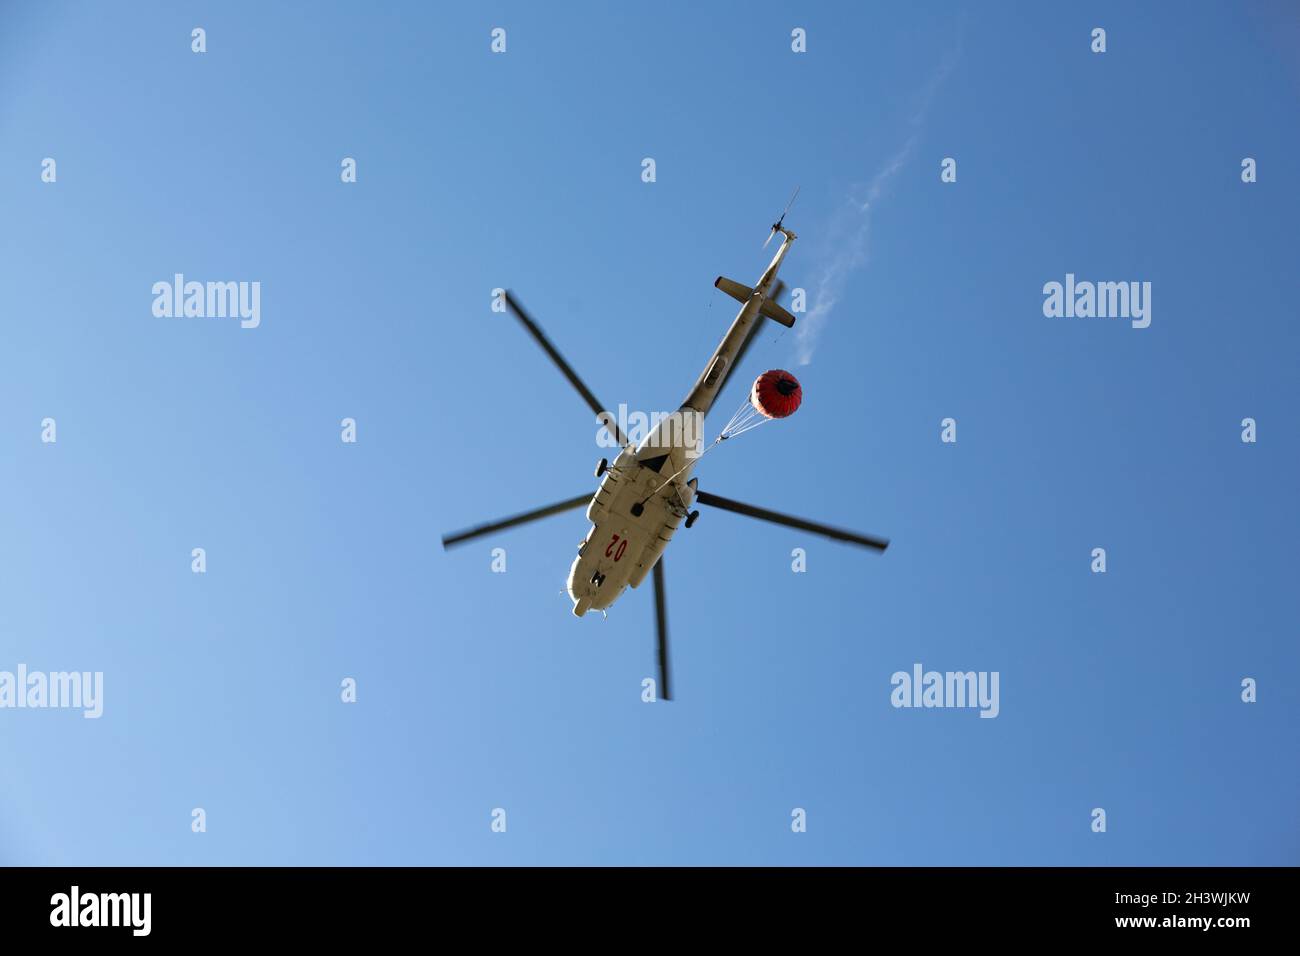 Hubschrauber fährt in den Feuerbereich, um Waldbrände zu löschen. Helikopter mit Wassereimer am blauen Himmel. Stockfoto